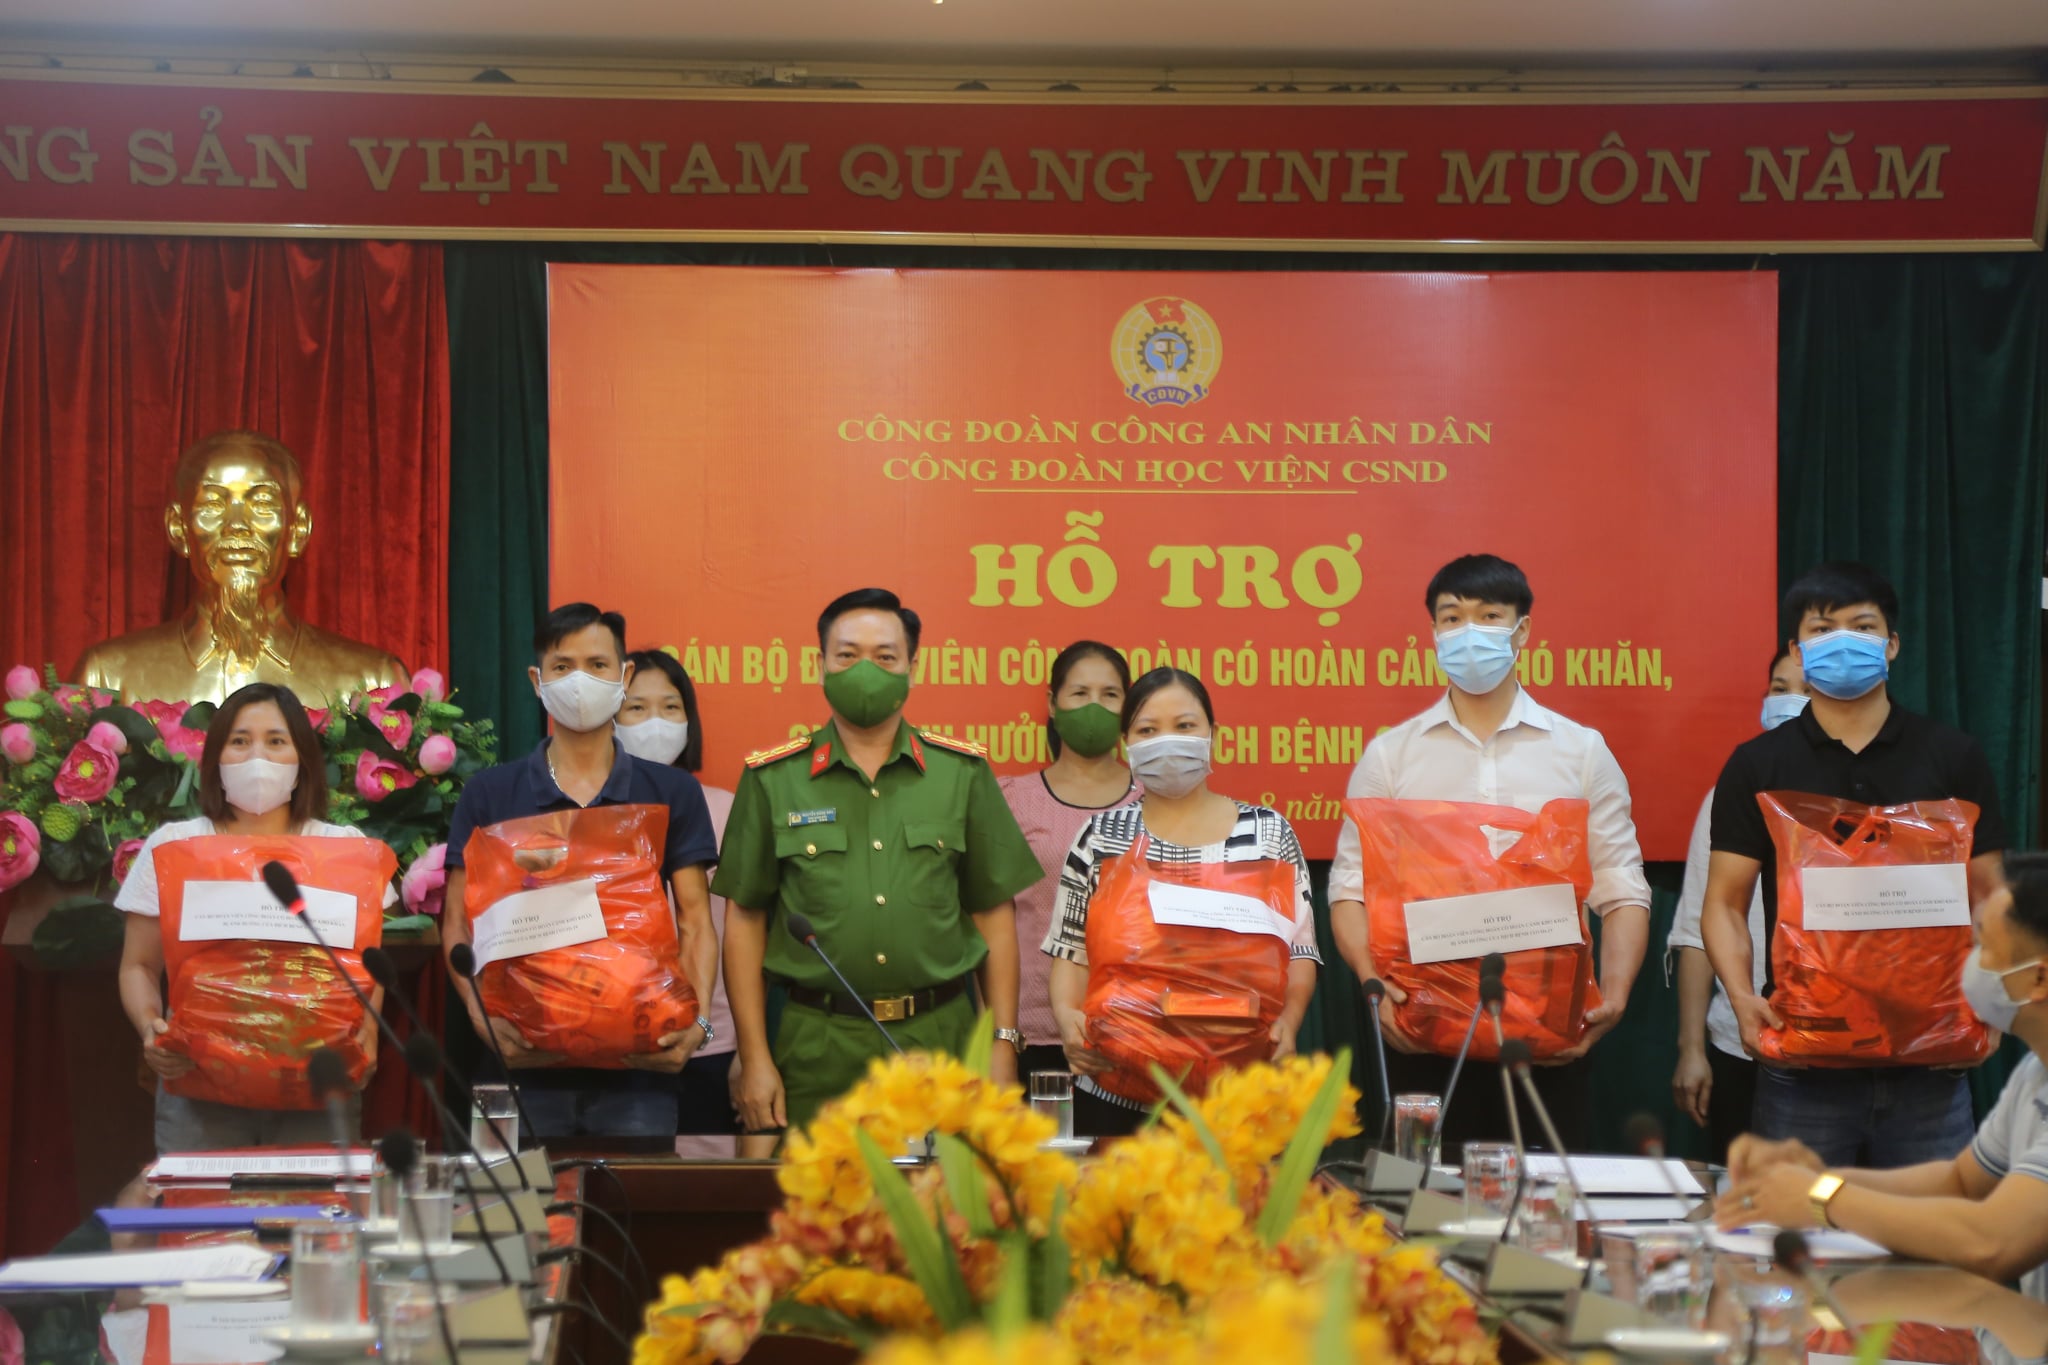 Đại tá, TS Nguyễn Đăng Sáu - Phó Giám đốc Học viện tặng quà cho cán bộ, đoàn viên hoàn cảnh khó khăn bị ảnh hưởng bởi dịch bệnh